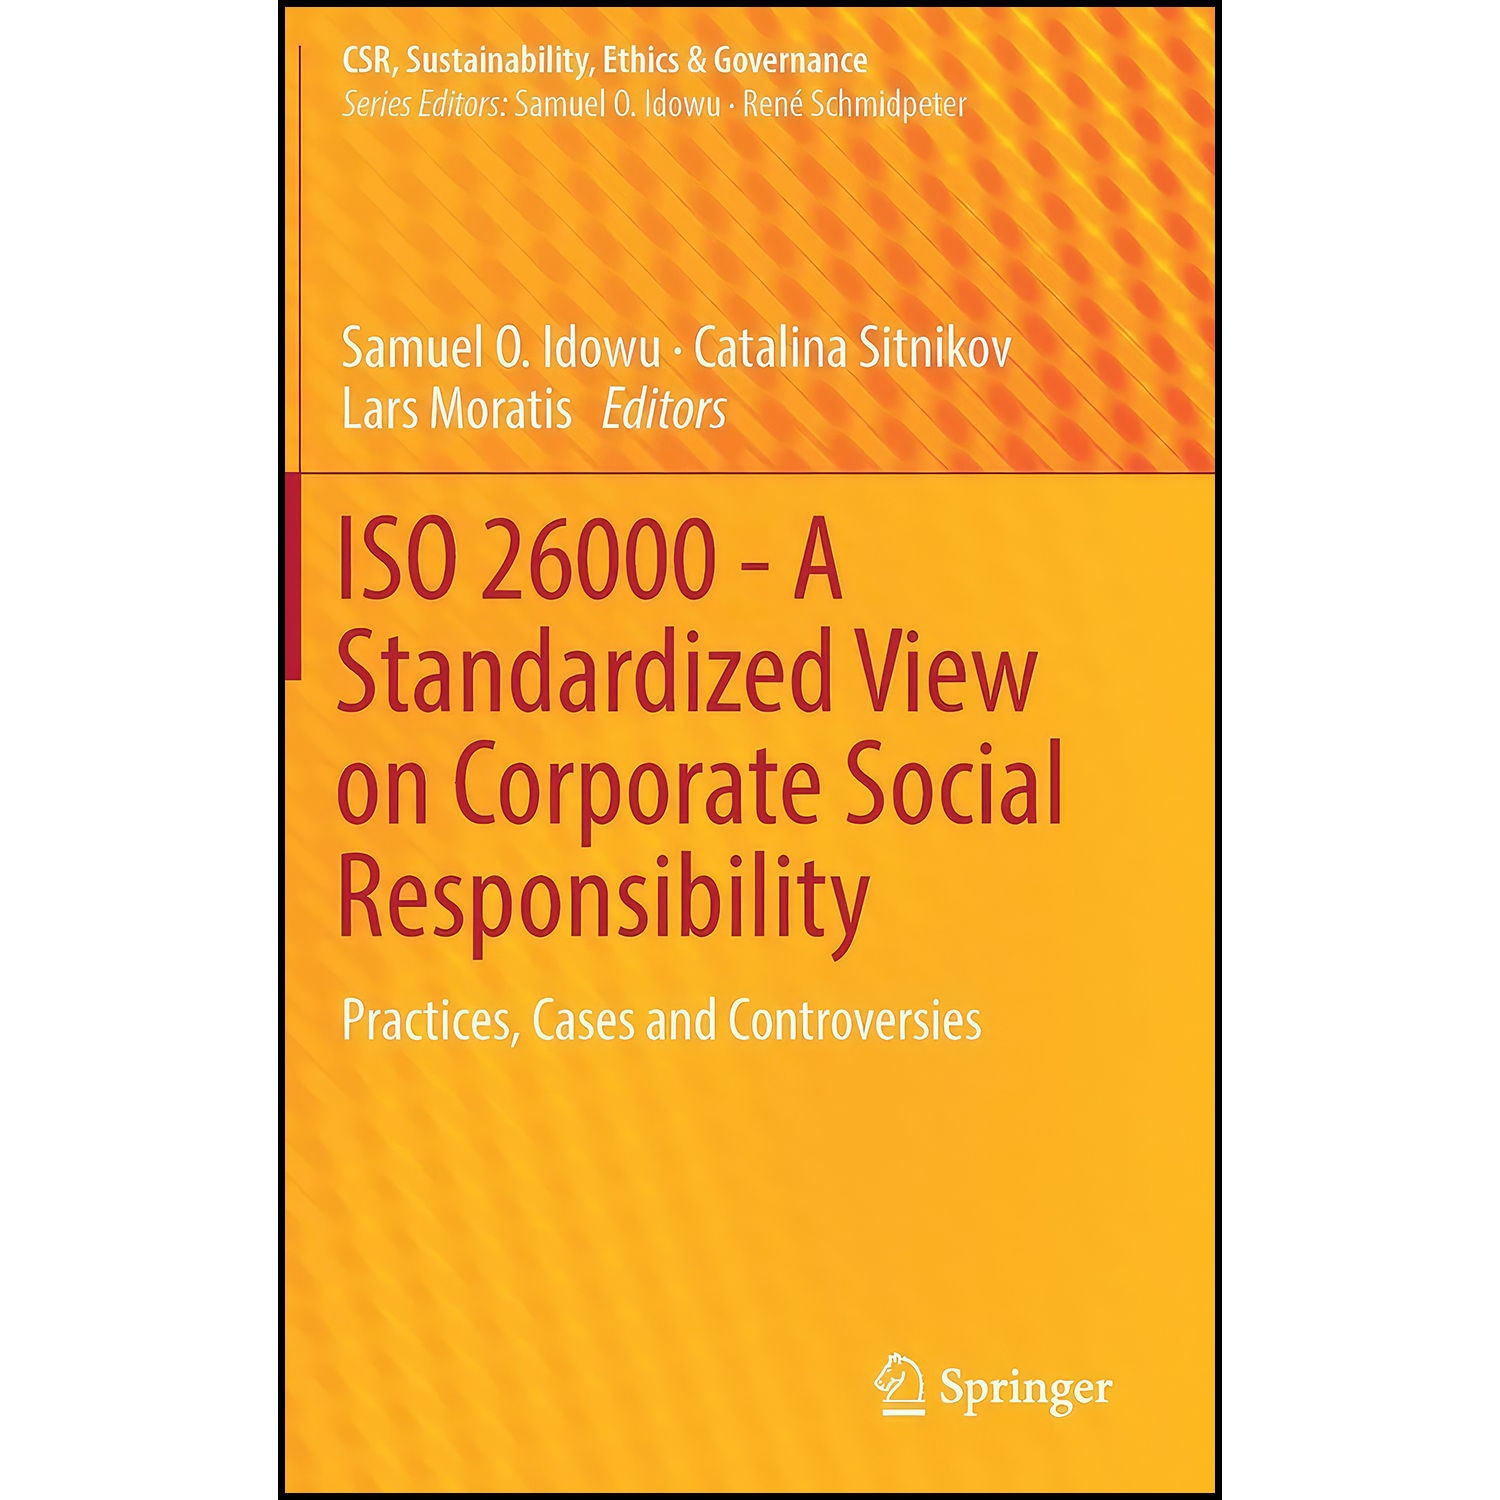 کتاب ISO 26000 - A Standardized View on Corporate Social Responsibility اثر جمعي از نويسندگان انتشارات Springer